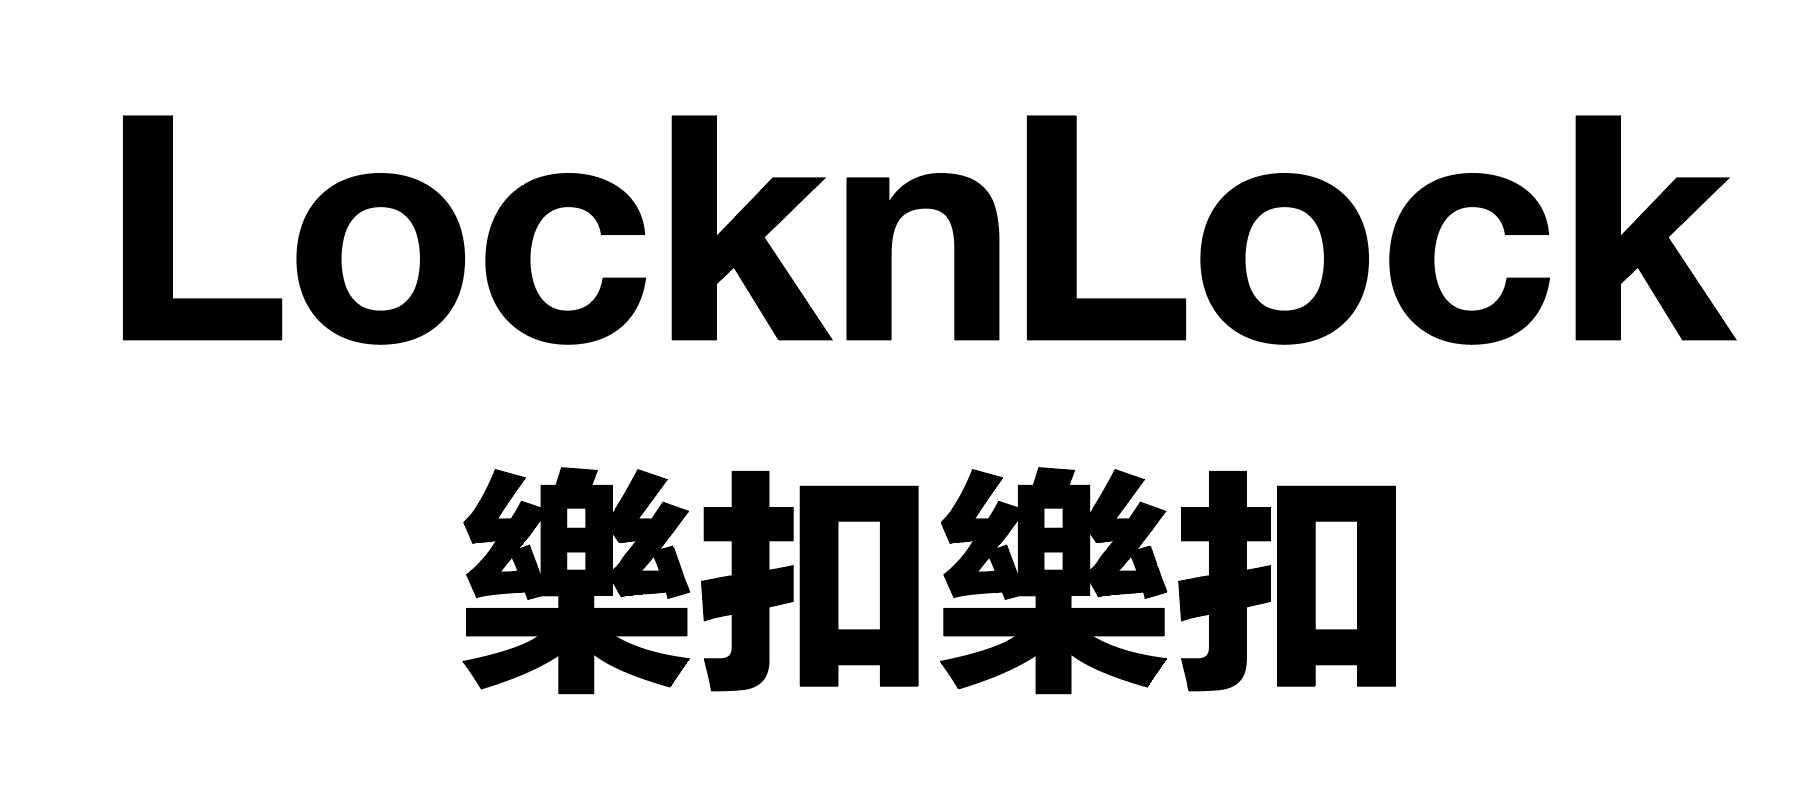 LocknLock樂扣樂扣